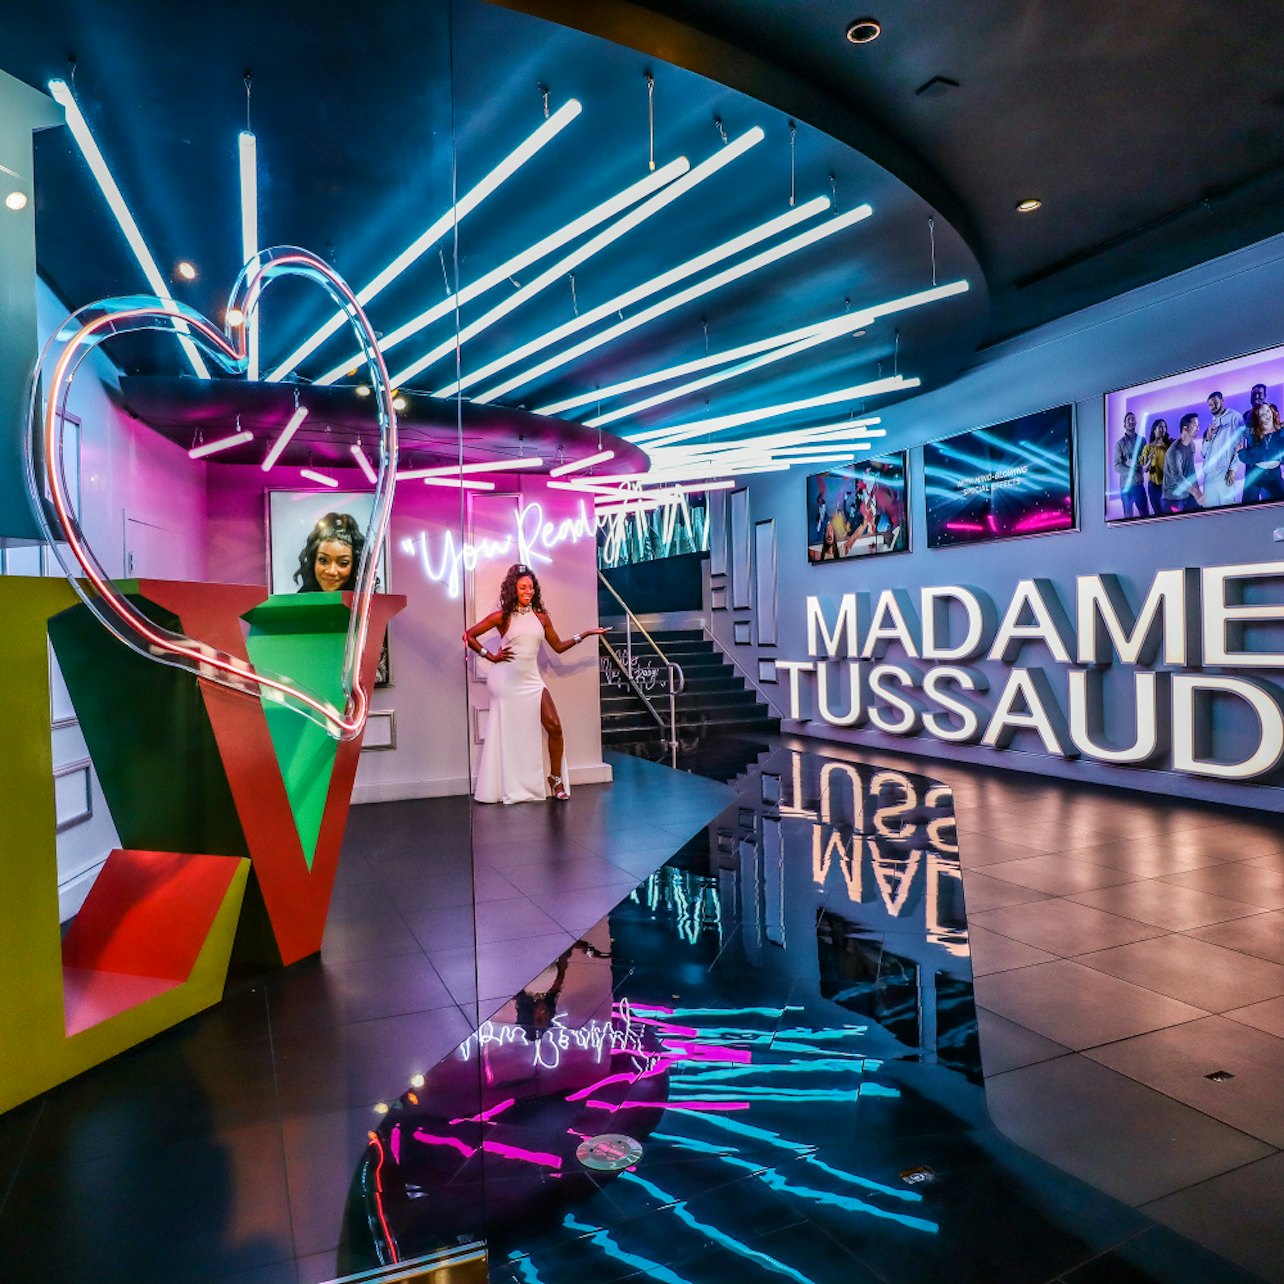 Madame Tussauds Las Vegas - Accommodations in Las Vegas